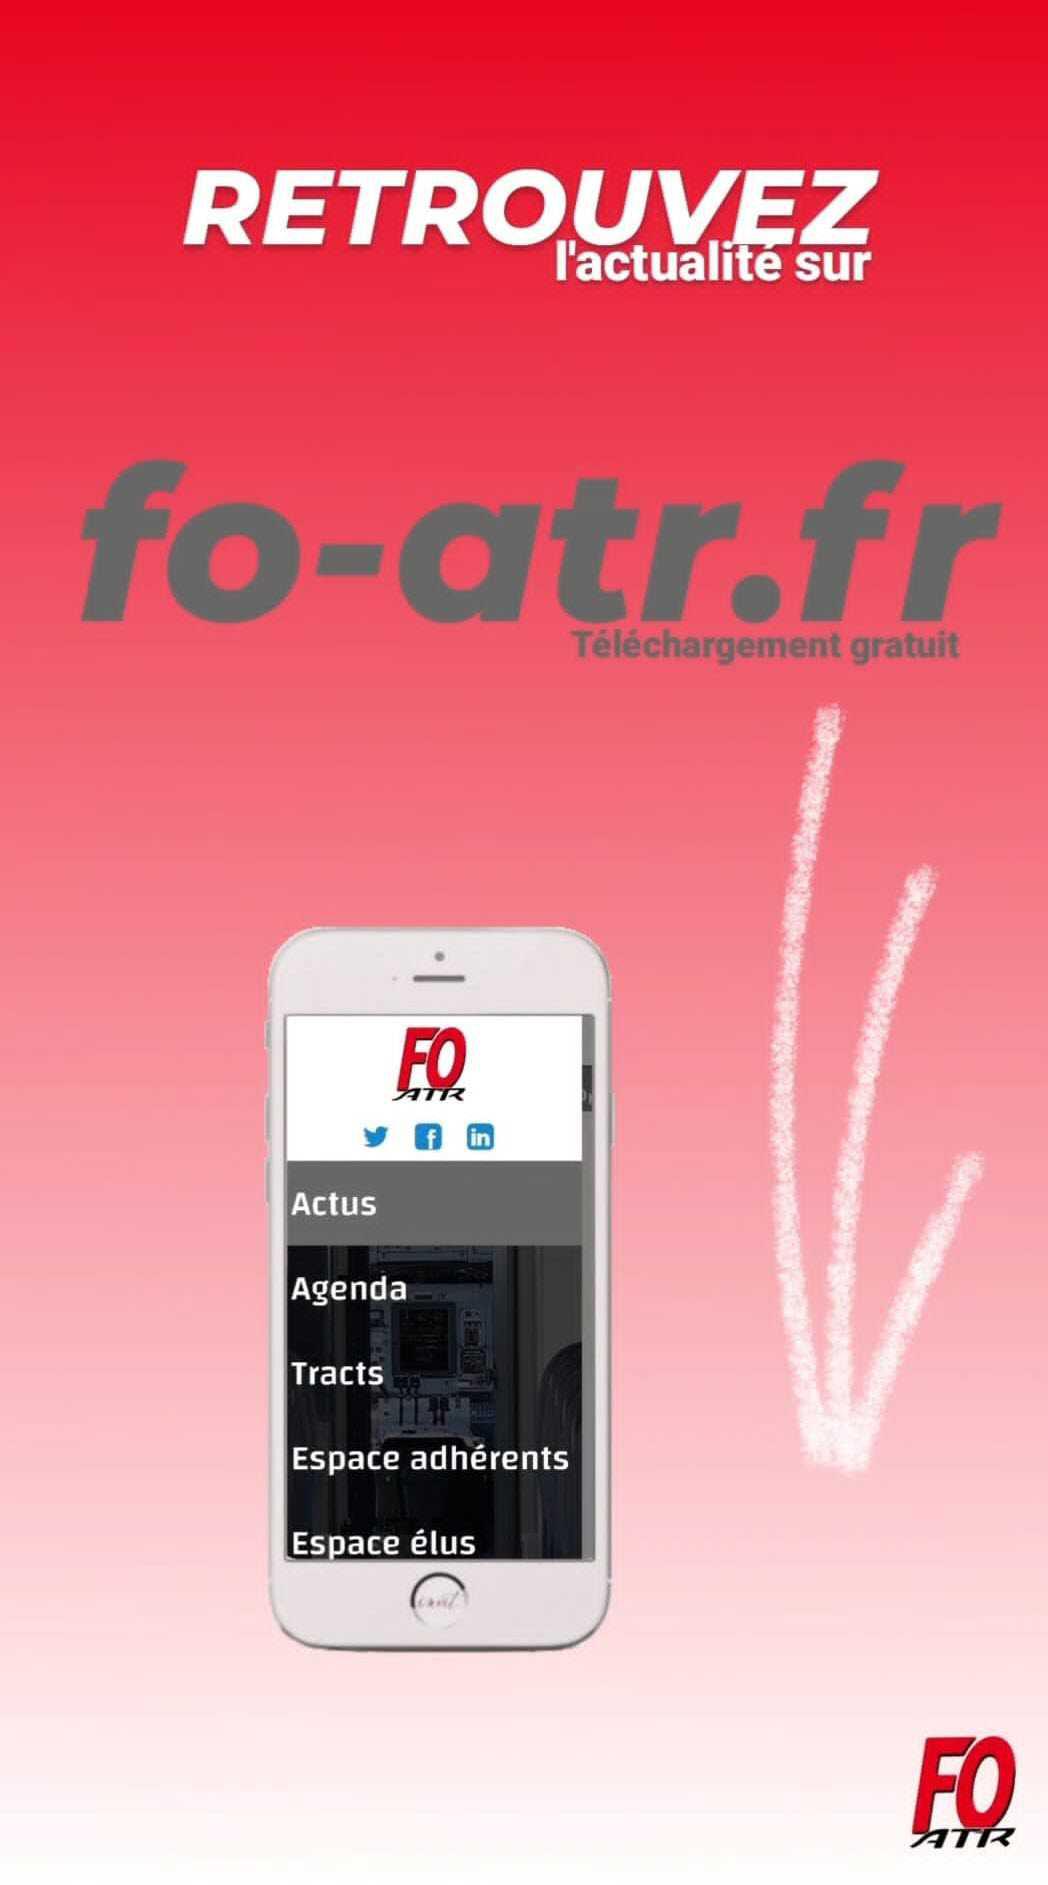 e-TRACTS / e-LEAFLETS : FO ATR Communique